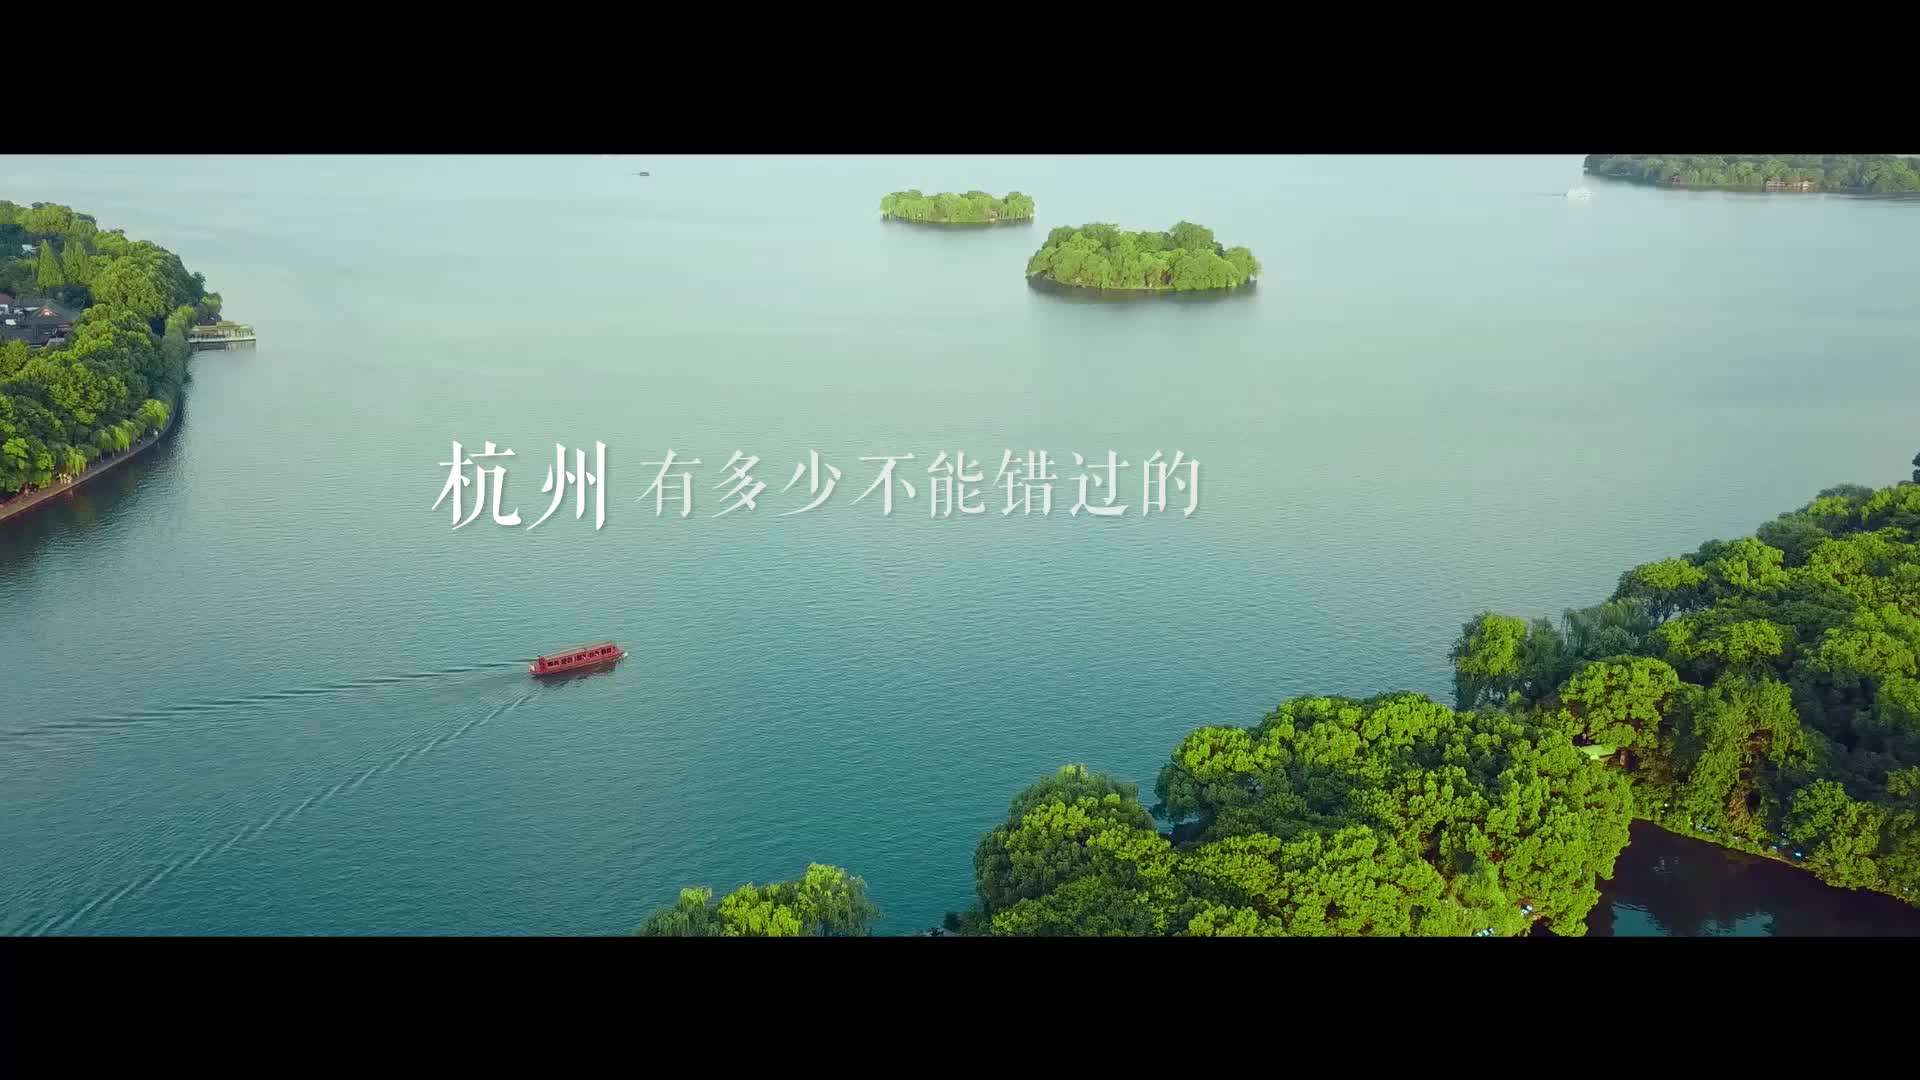 杭城宣传片《杭州之美》